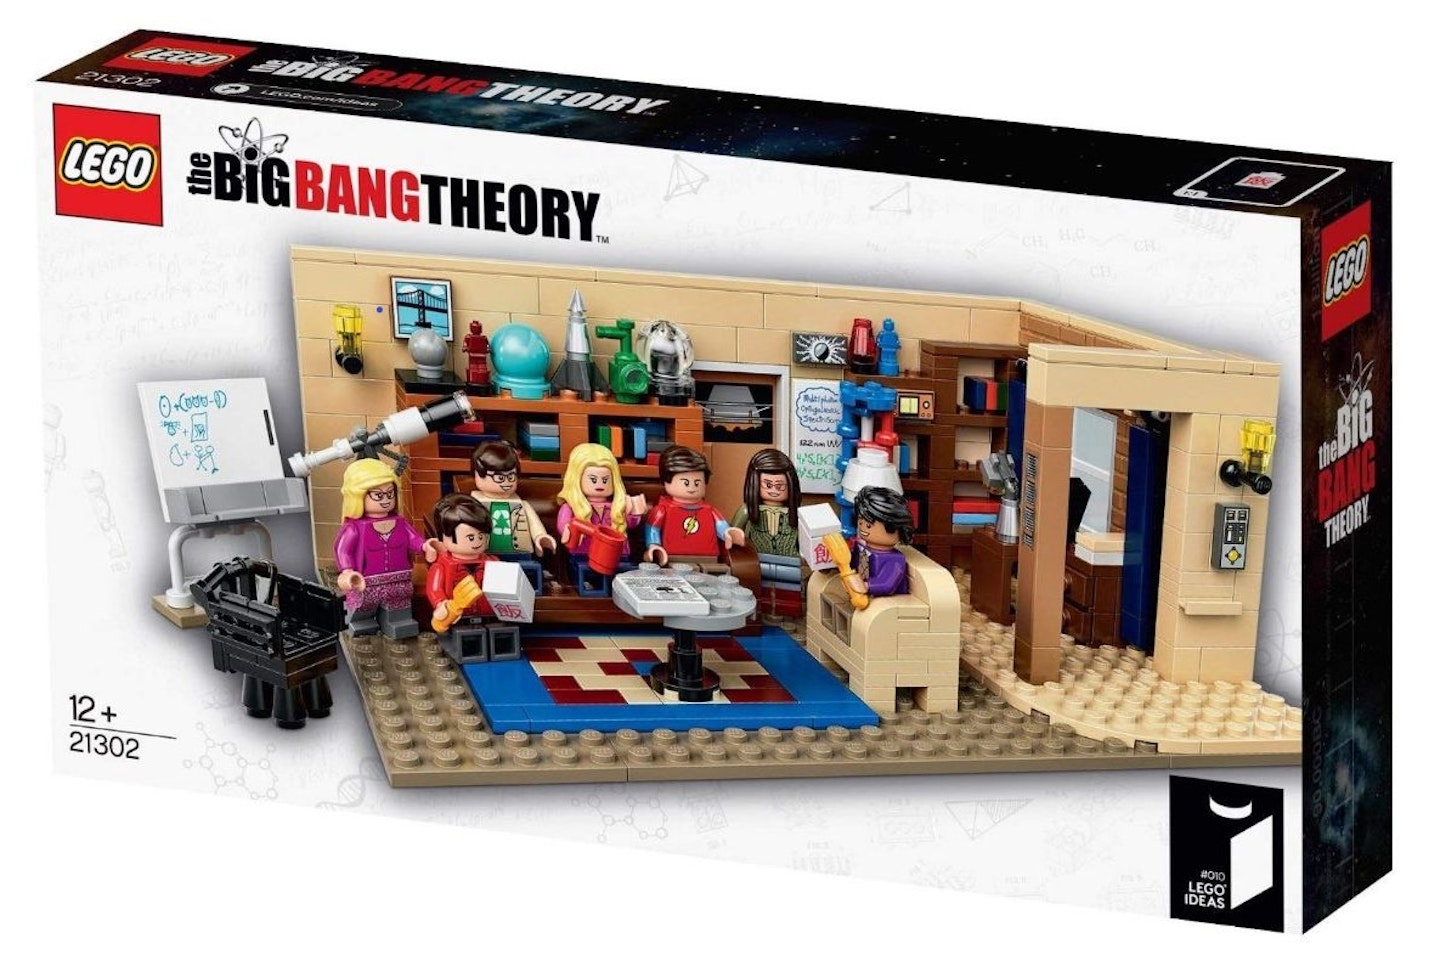 The Big Bang Theory Set, £114.90